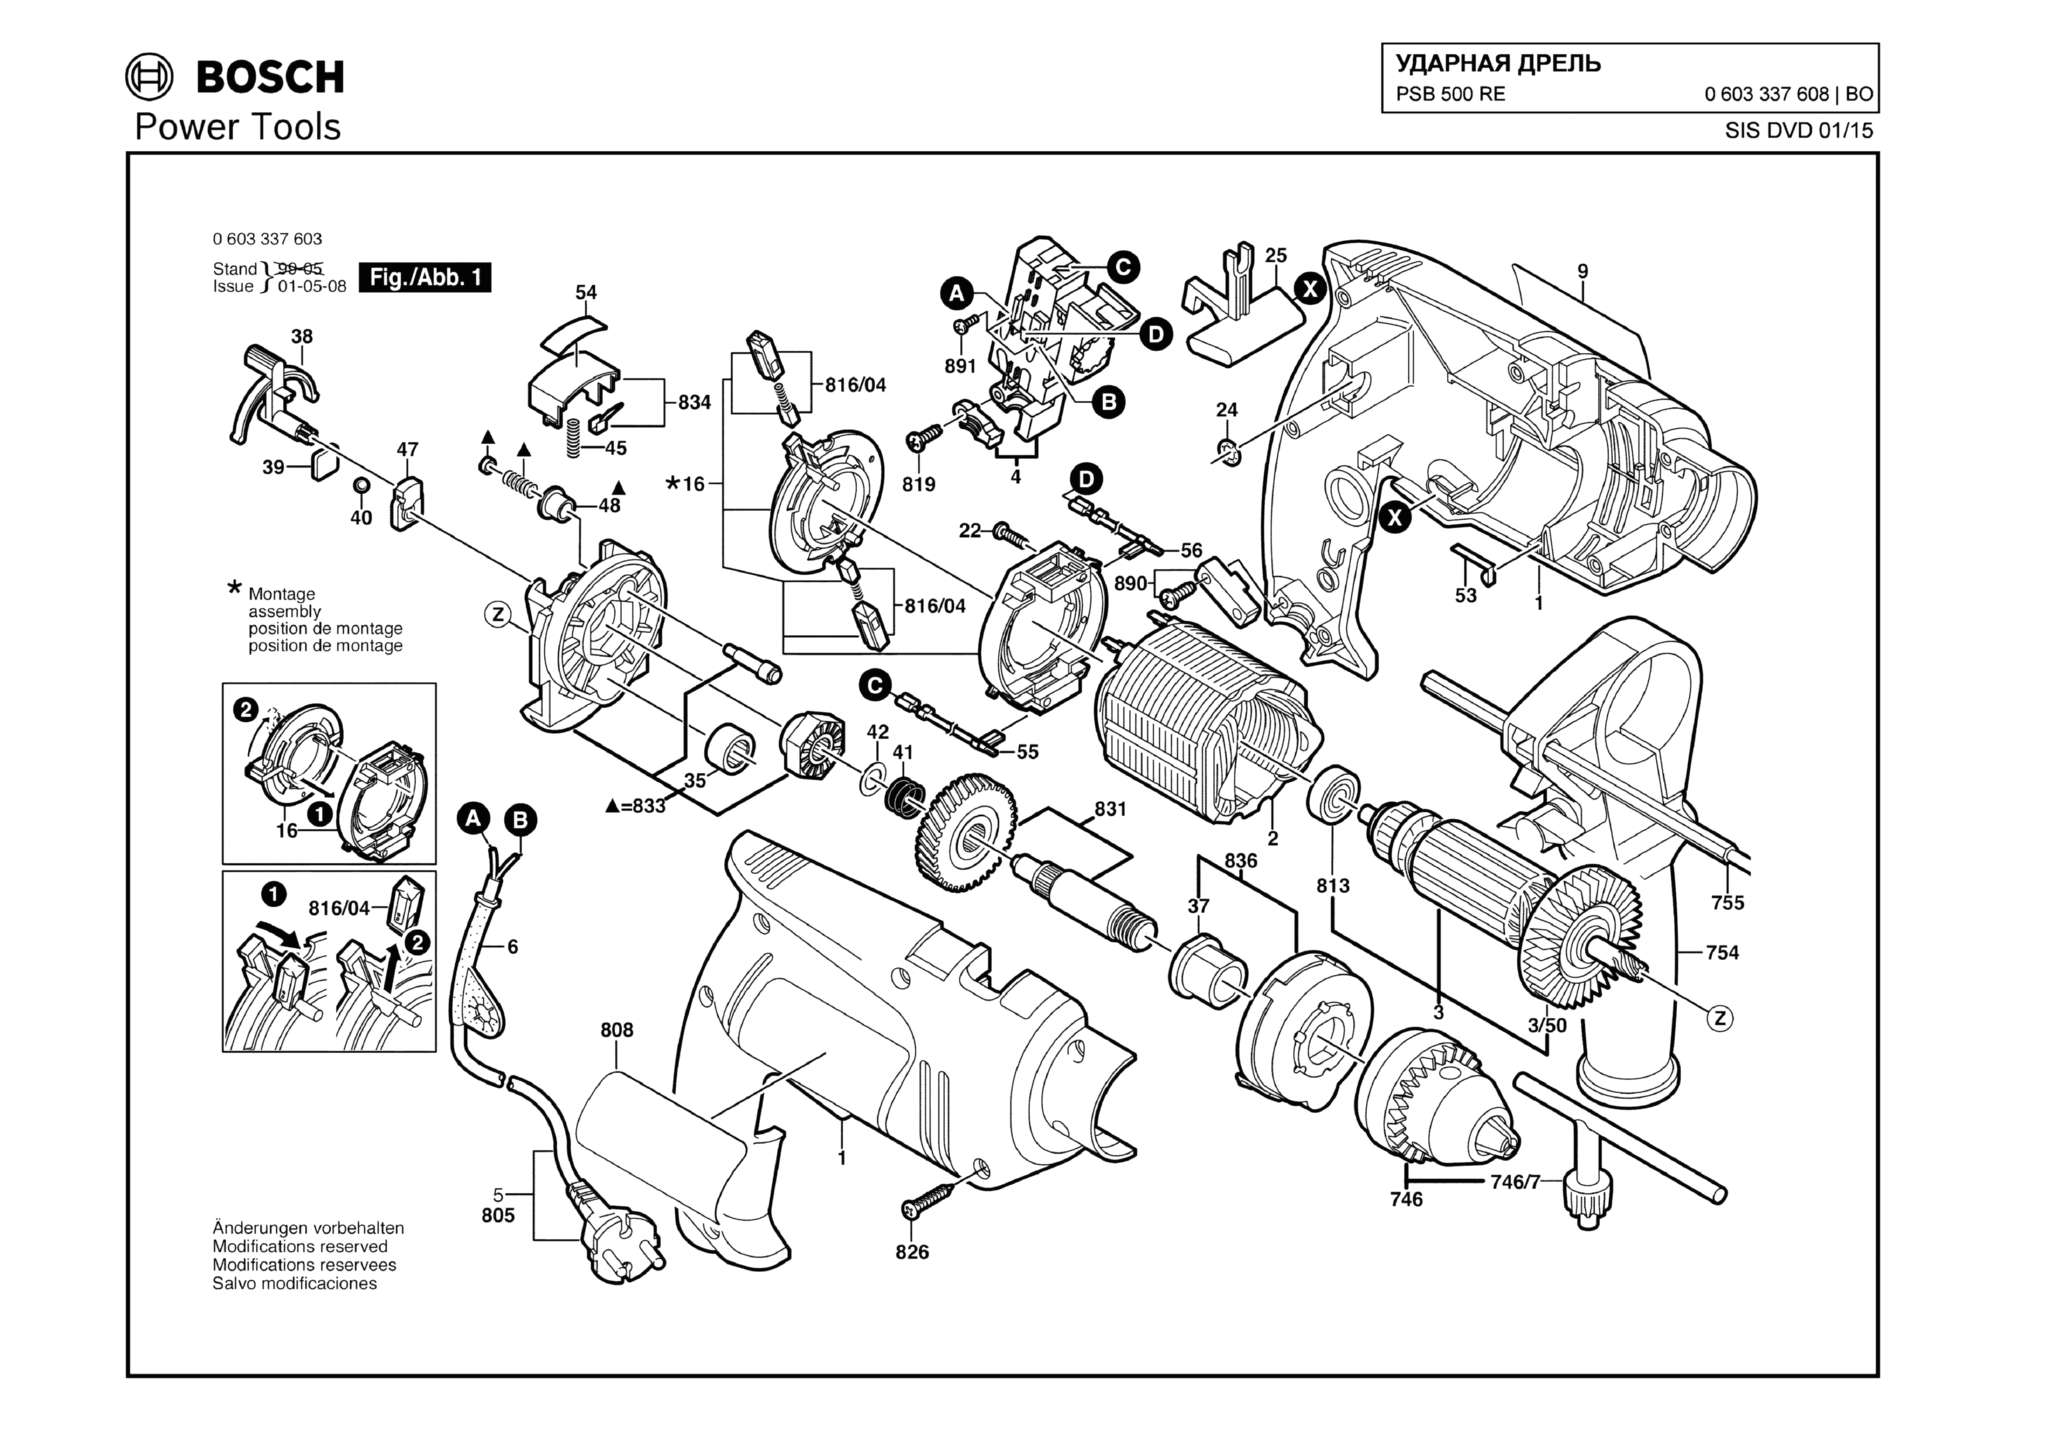 Запчасти, схема и деталировка Bosch PSB 500 RE (ТИП 0603337608)